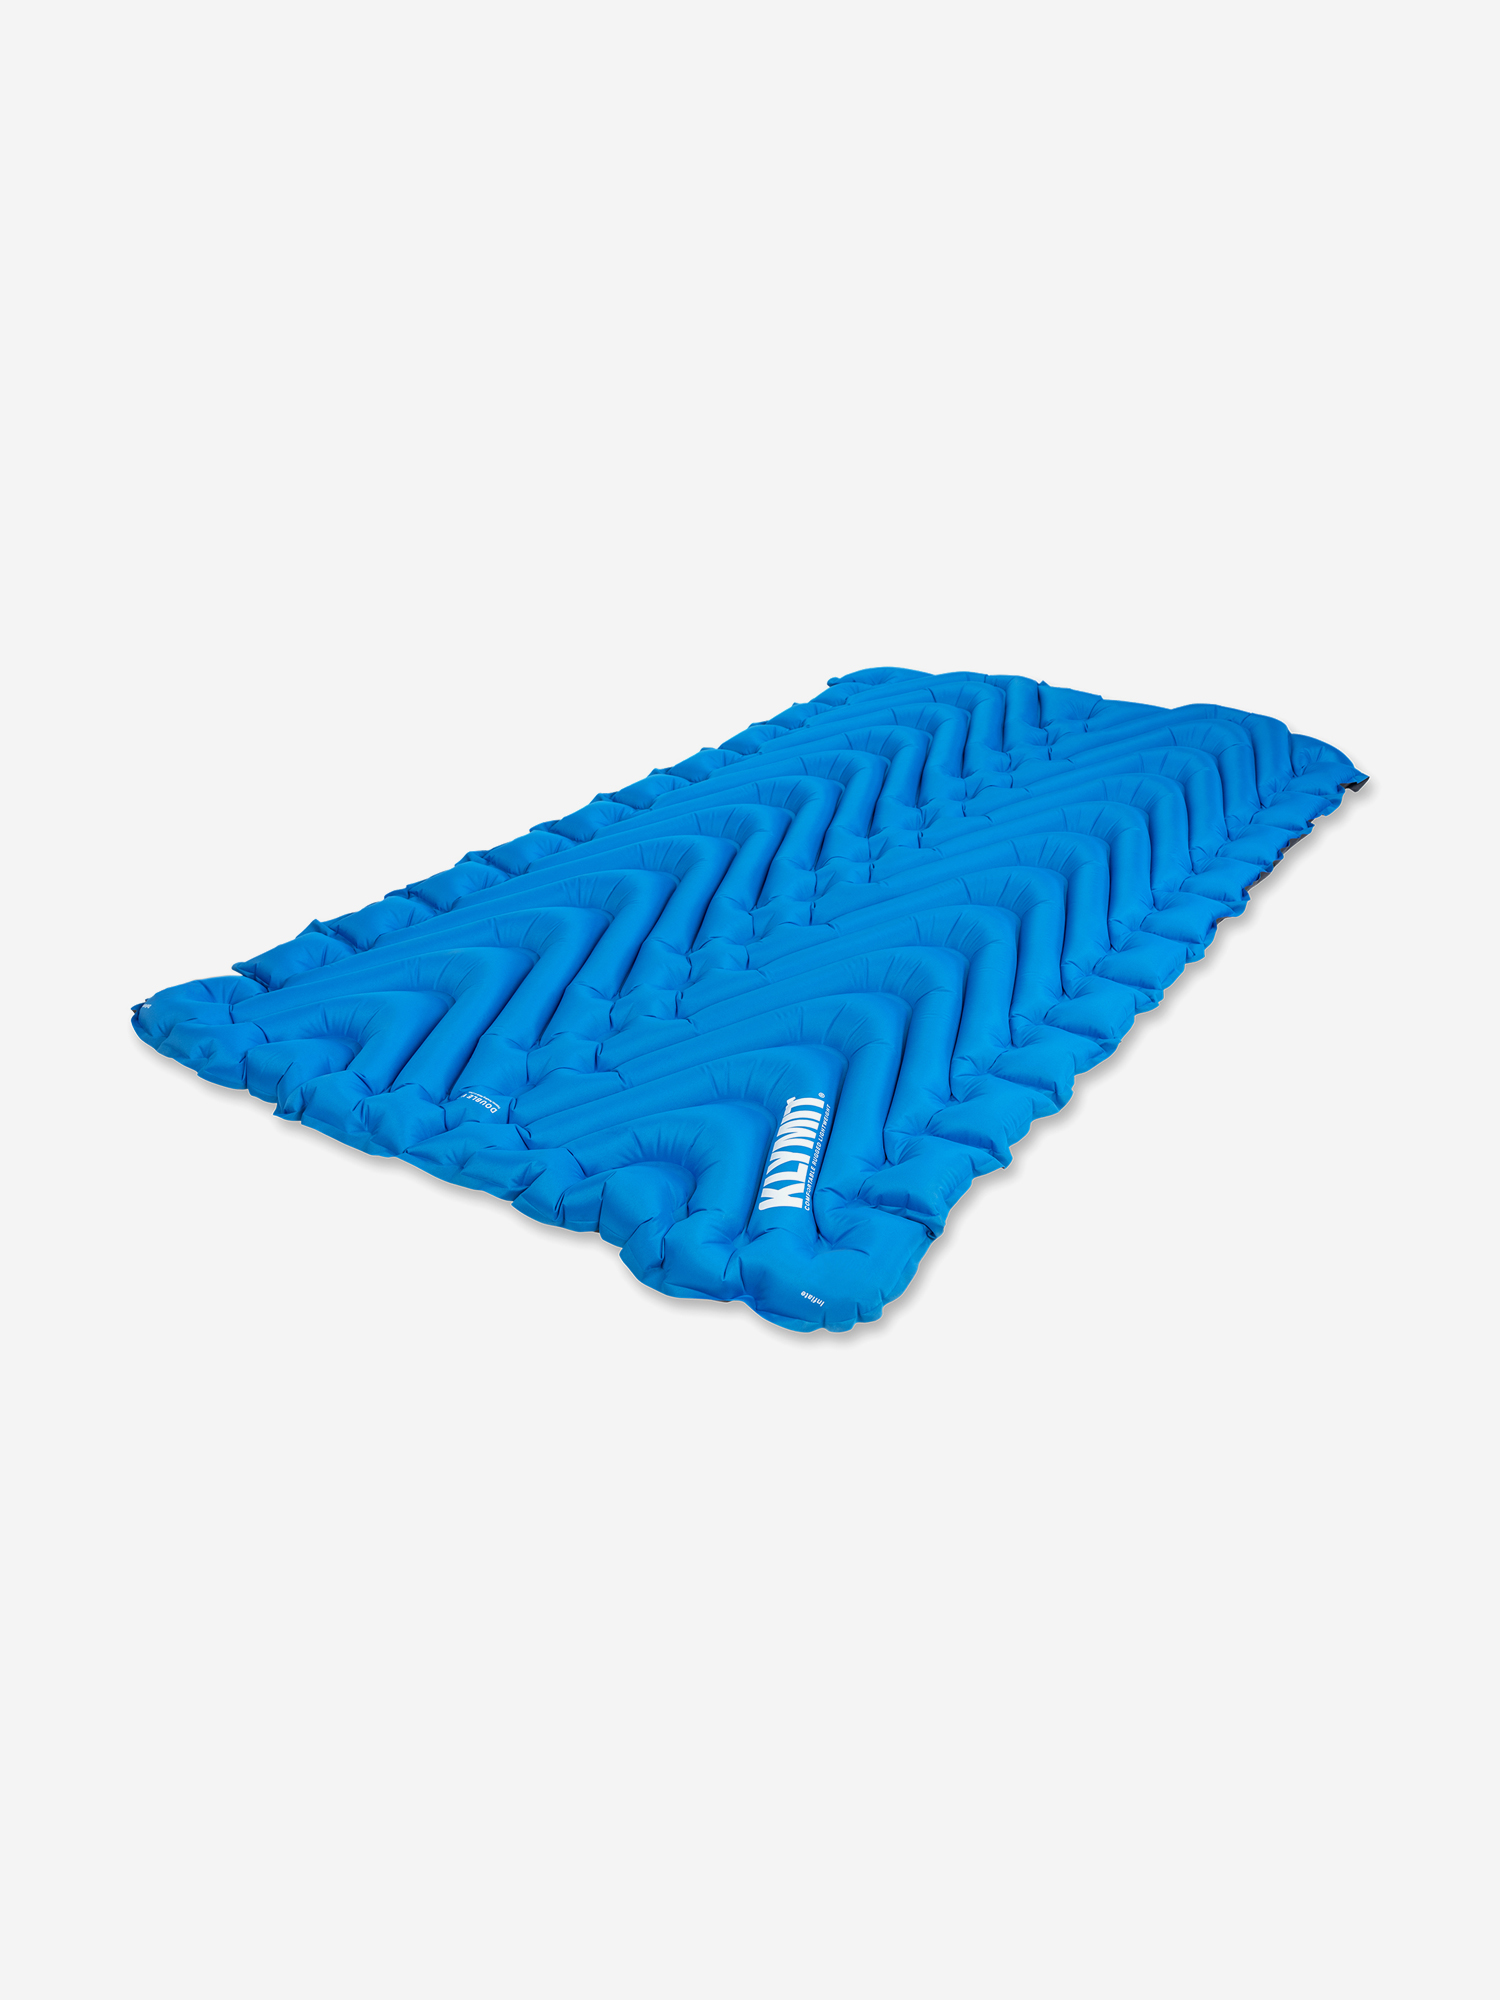 Надувной коврик KLYMIT Static V pad Double, Синий надувной коврик klymit insulated static v realtree™ edge зеленый